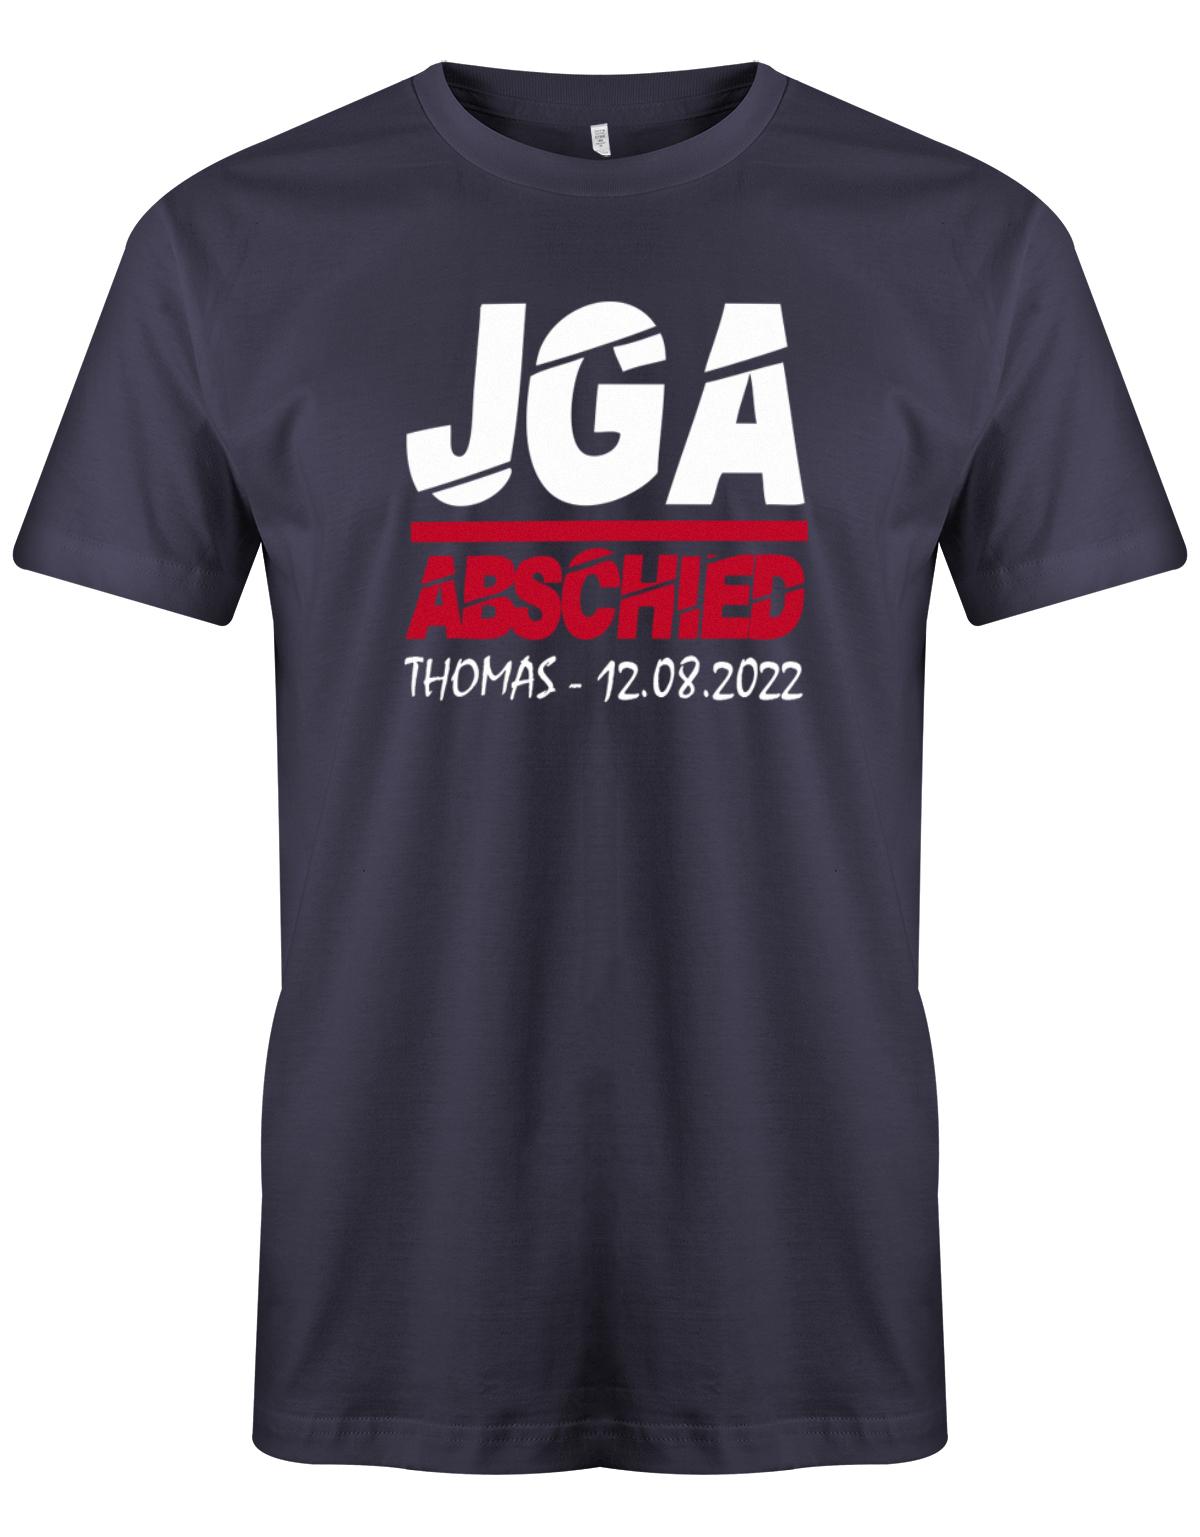 JGA-Abschied-mit-Name-und-Datum-Herren-Shirt-Navy